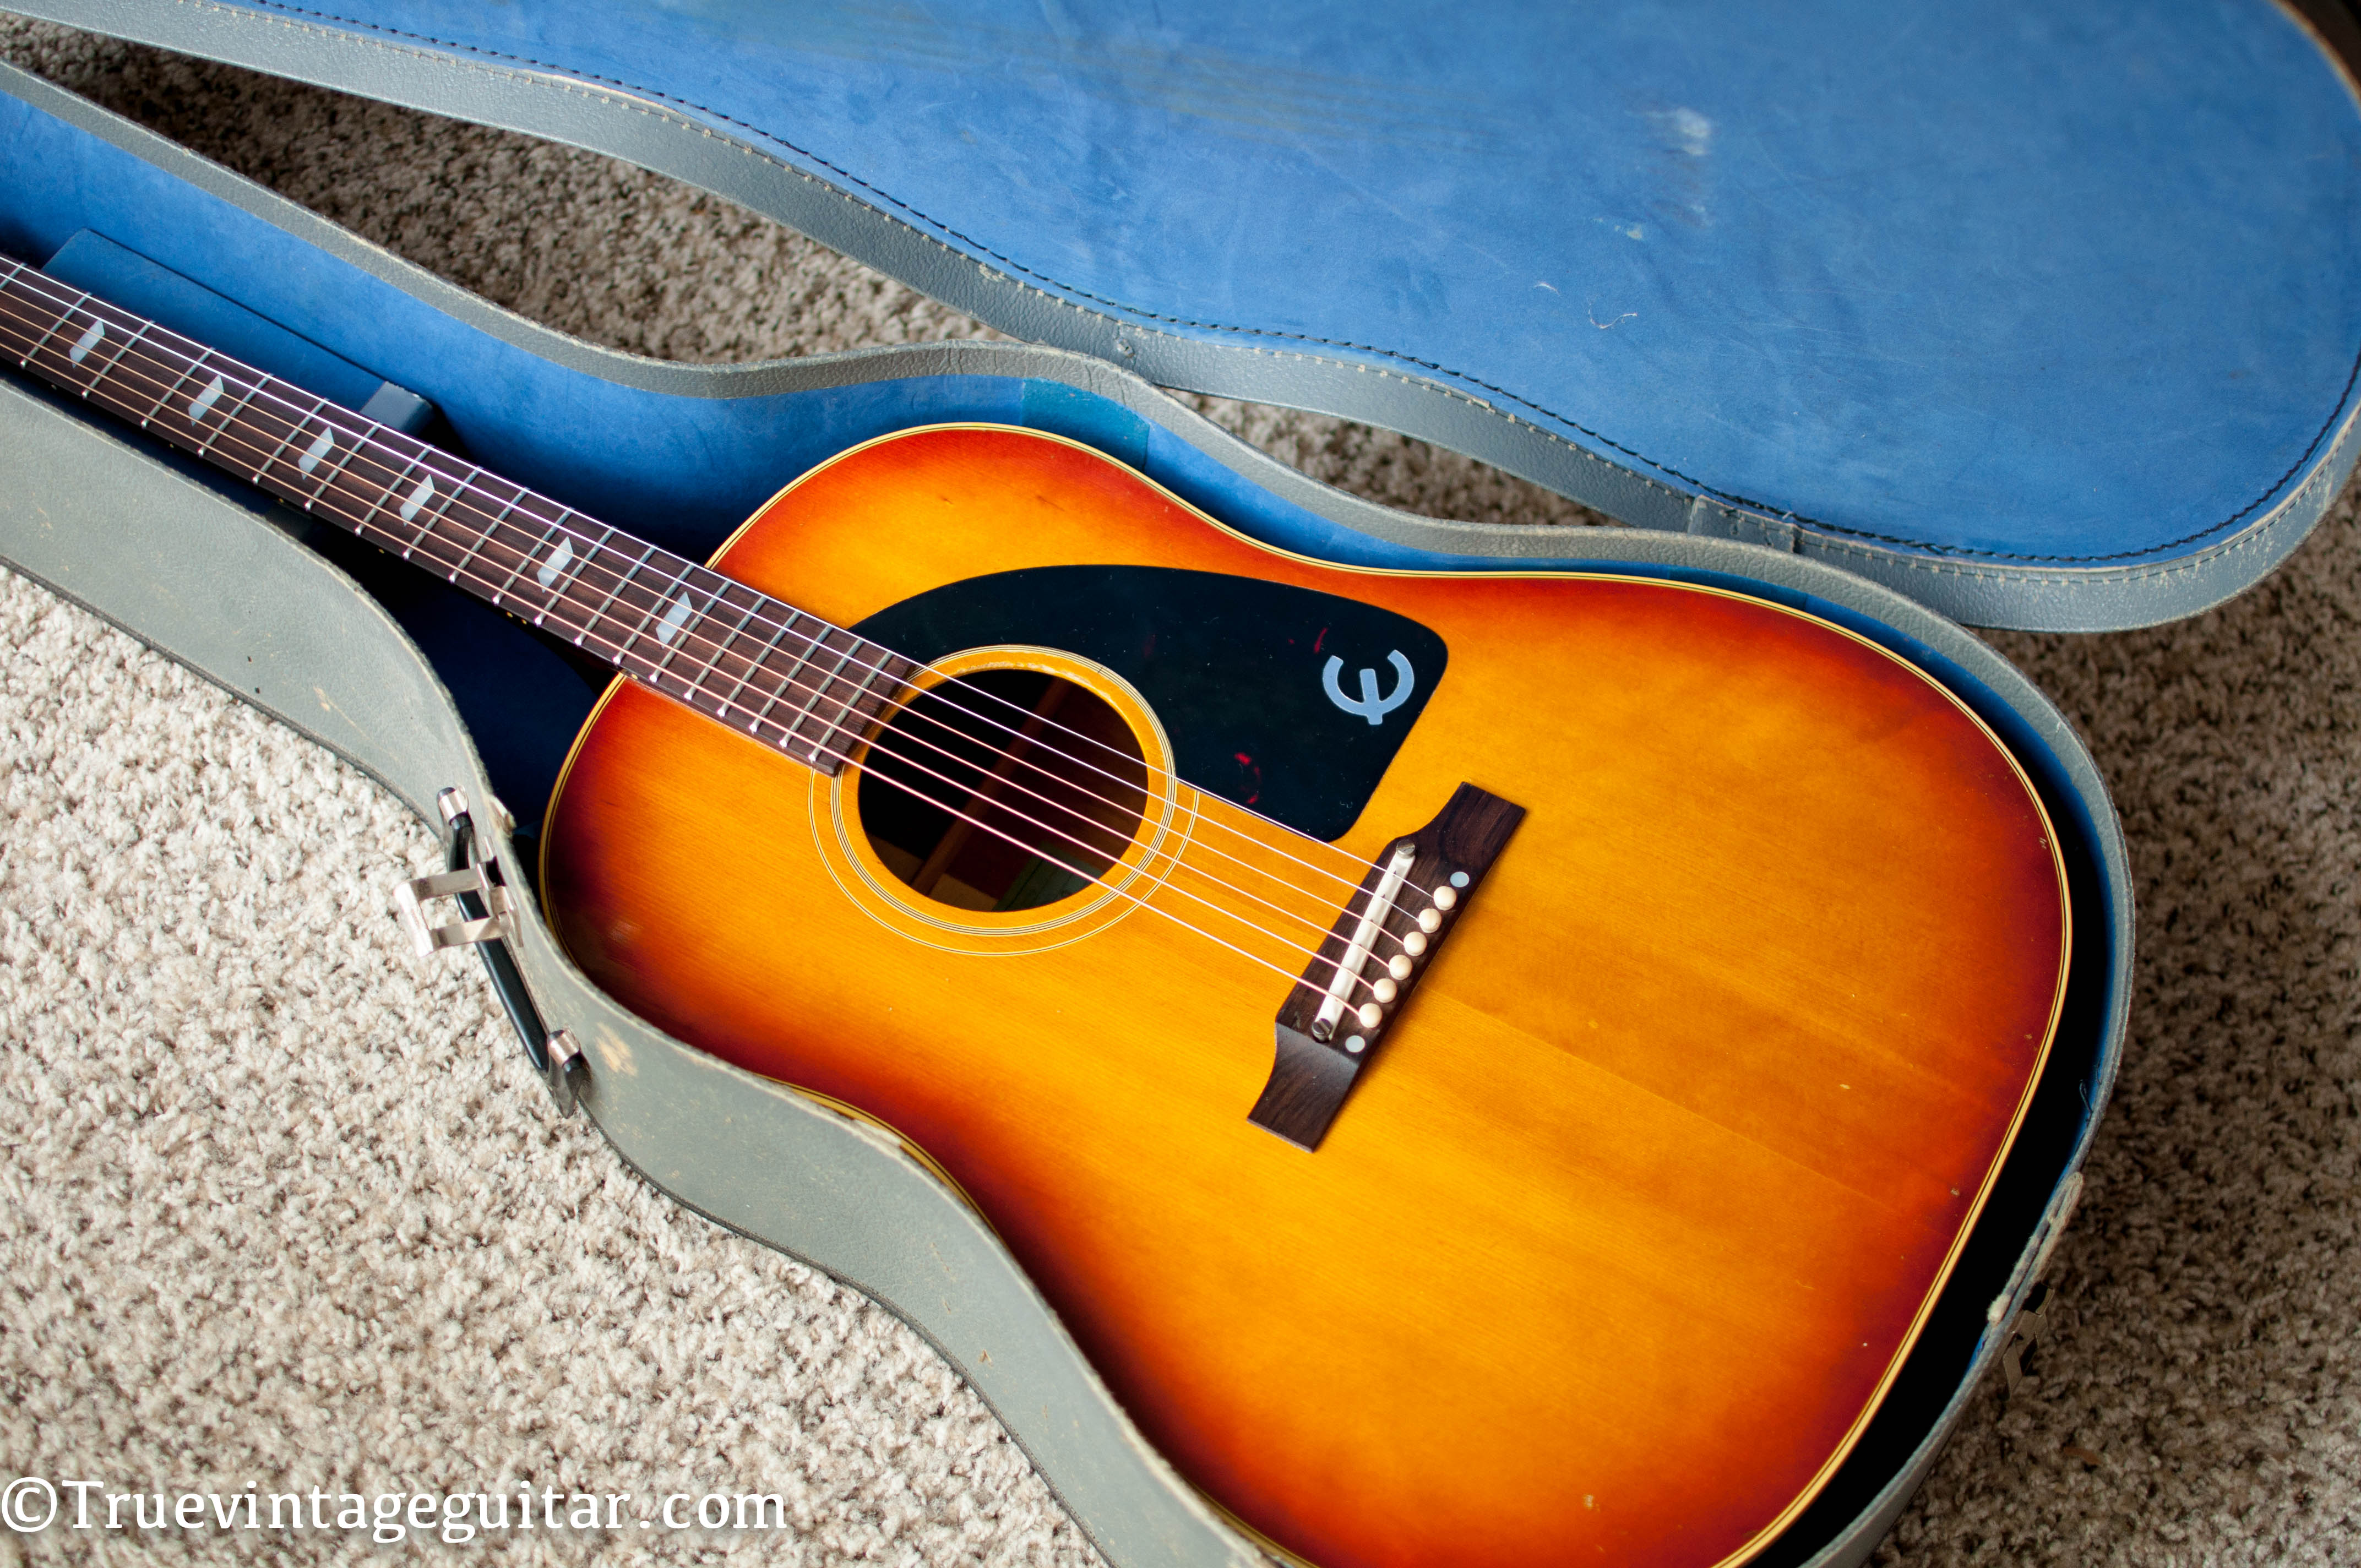 Vintage Epiphone acoustic guitar 1960s